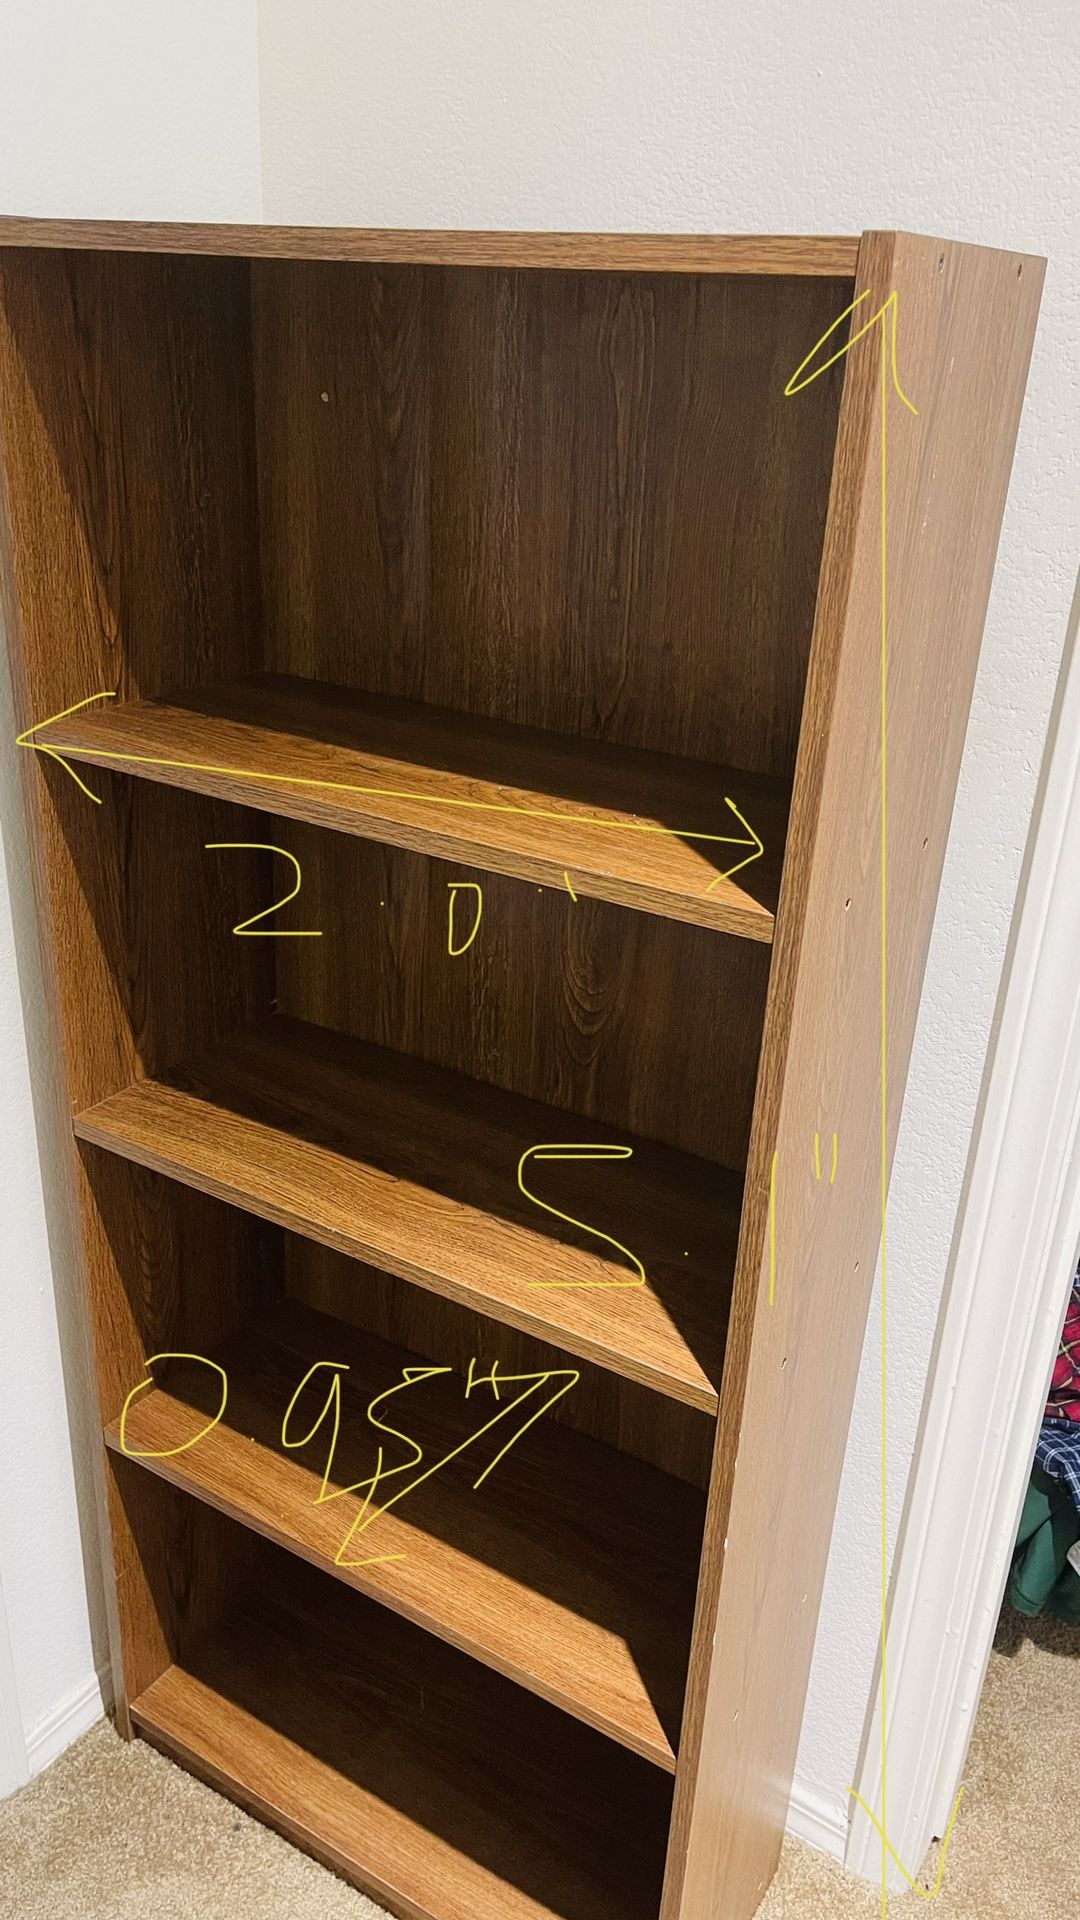 4 Shelf Book/ Shoe rack